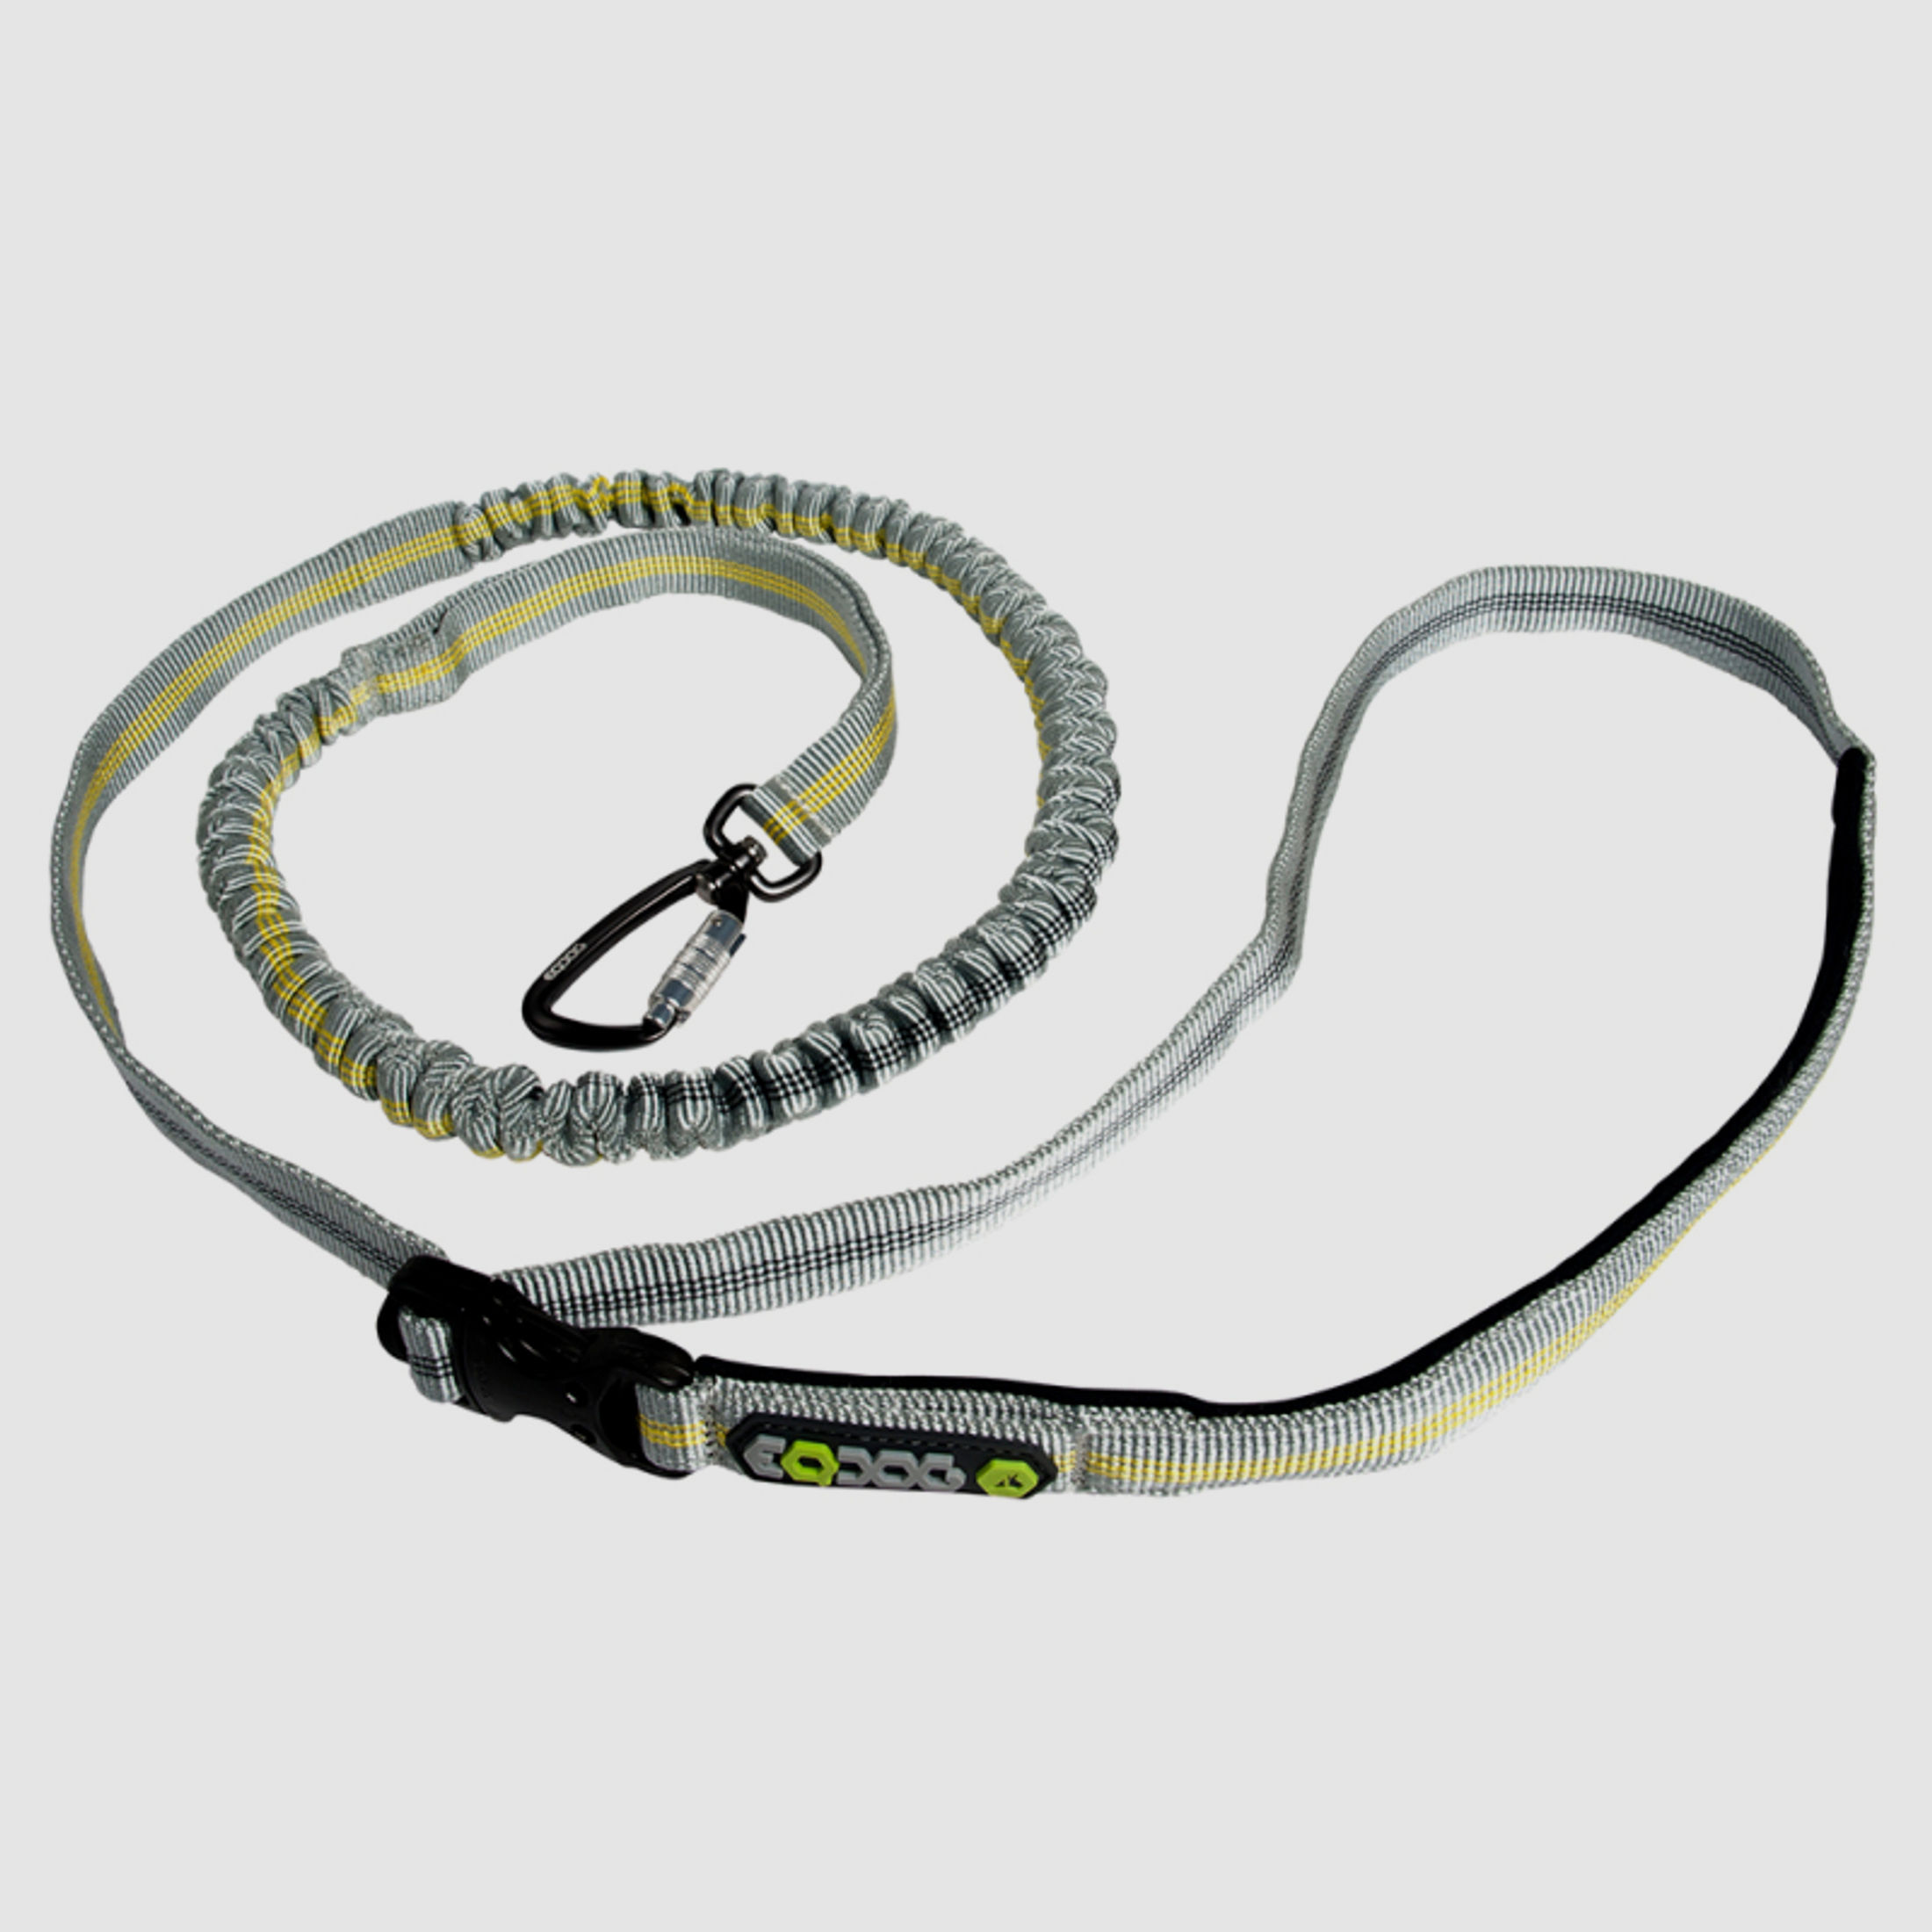 EQDOG "Jogging Leash" - hochwertige Umähngeleine, Führleine | verstellbar max. 125cm | elastisch